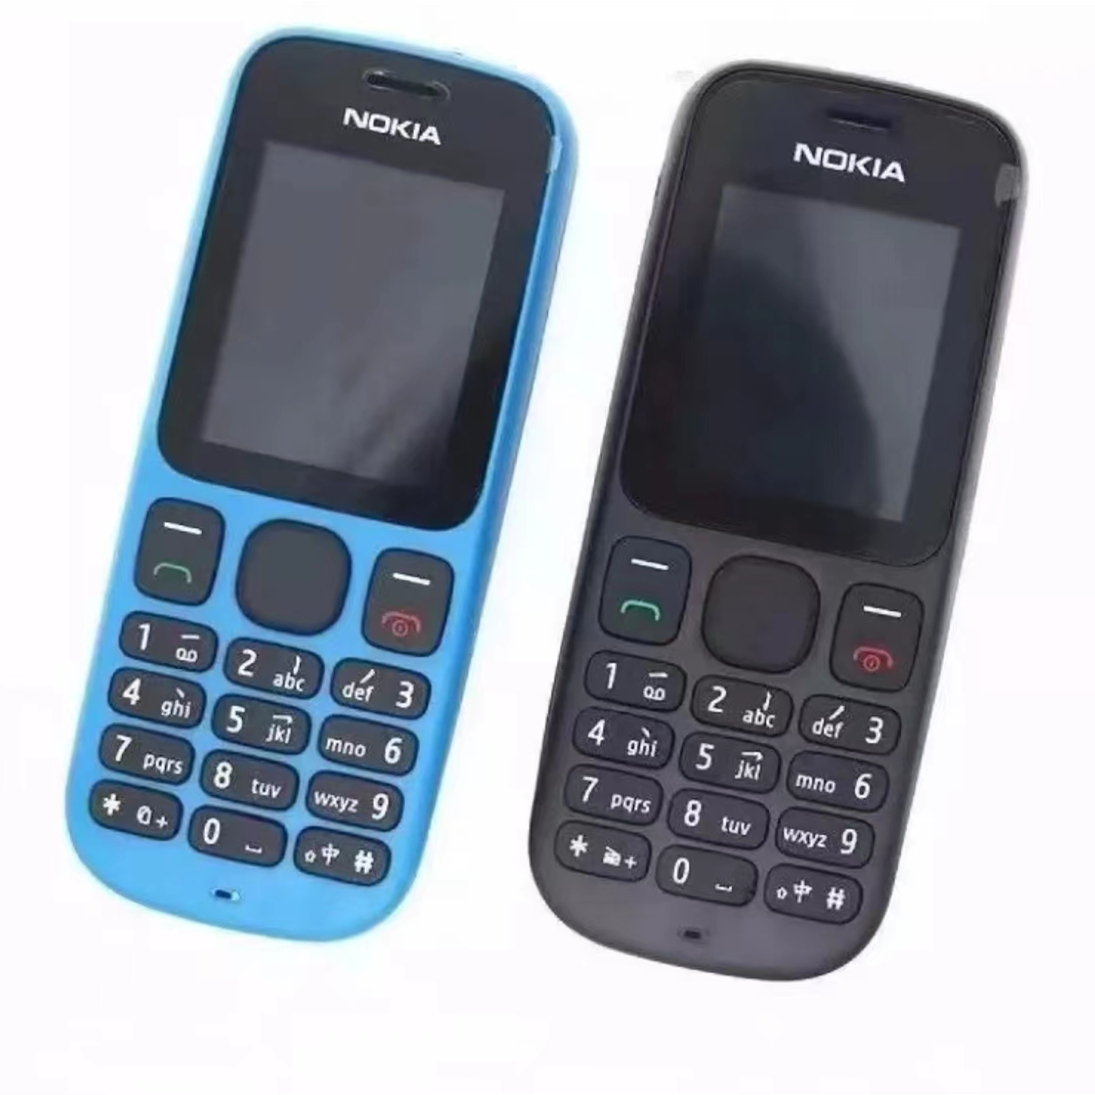 รูปภาพของ โทรศัพท์รุ่น Nokia 101 ส่งฟรีตามเงื่อนไขร้านขายของโทรศัพท์มือถือรุ่นปุ่มกด คล้ายซัมซุงฮีโร่